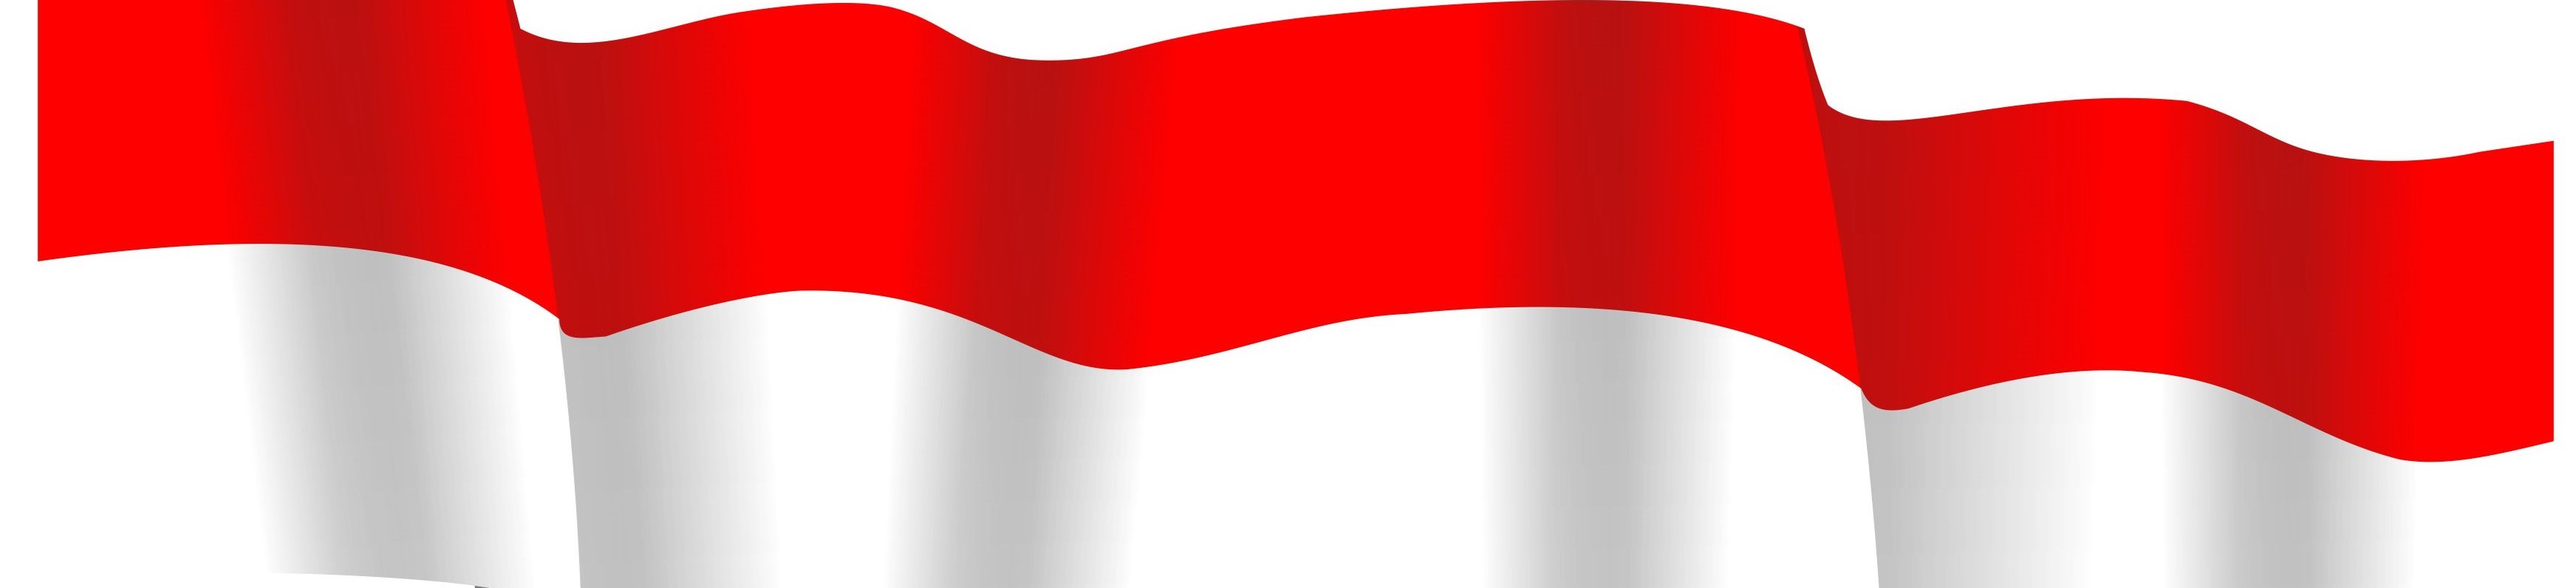 vektor bendera merah putih cdr